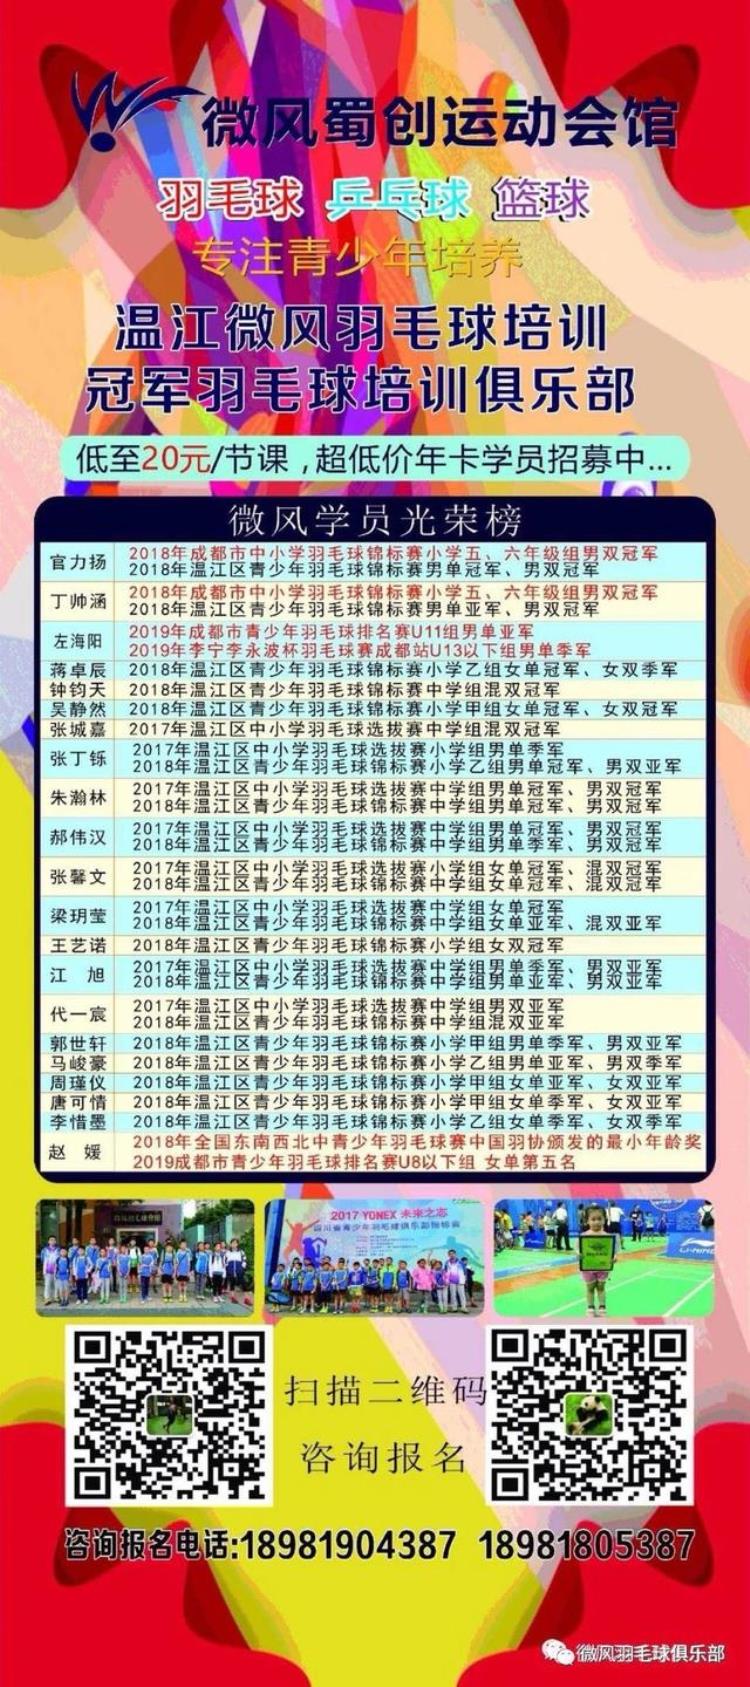 温江微风羽毛球俱乐部长期开设羽毛球成人青少年培训班